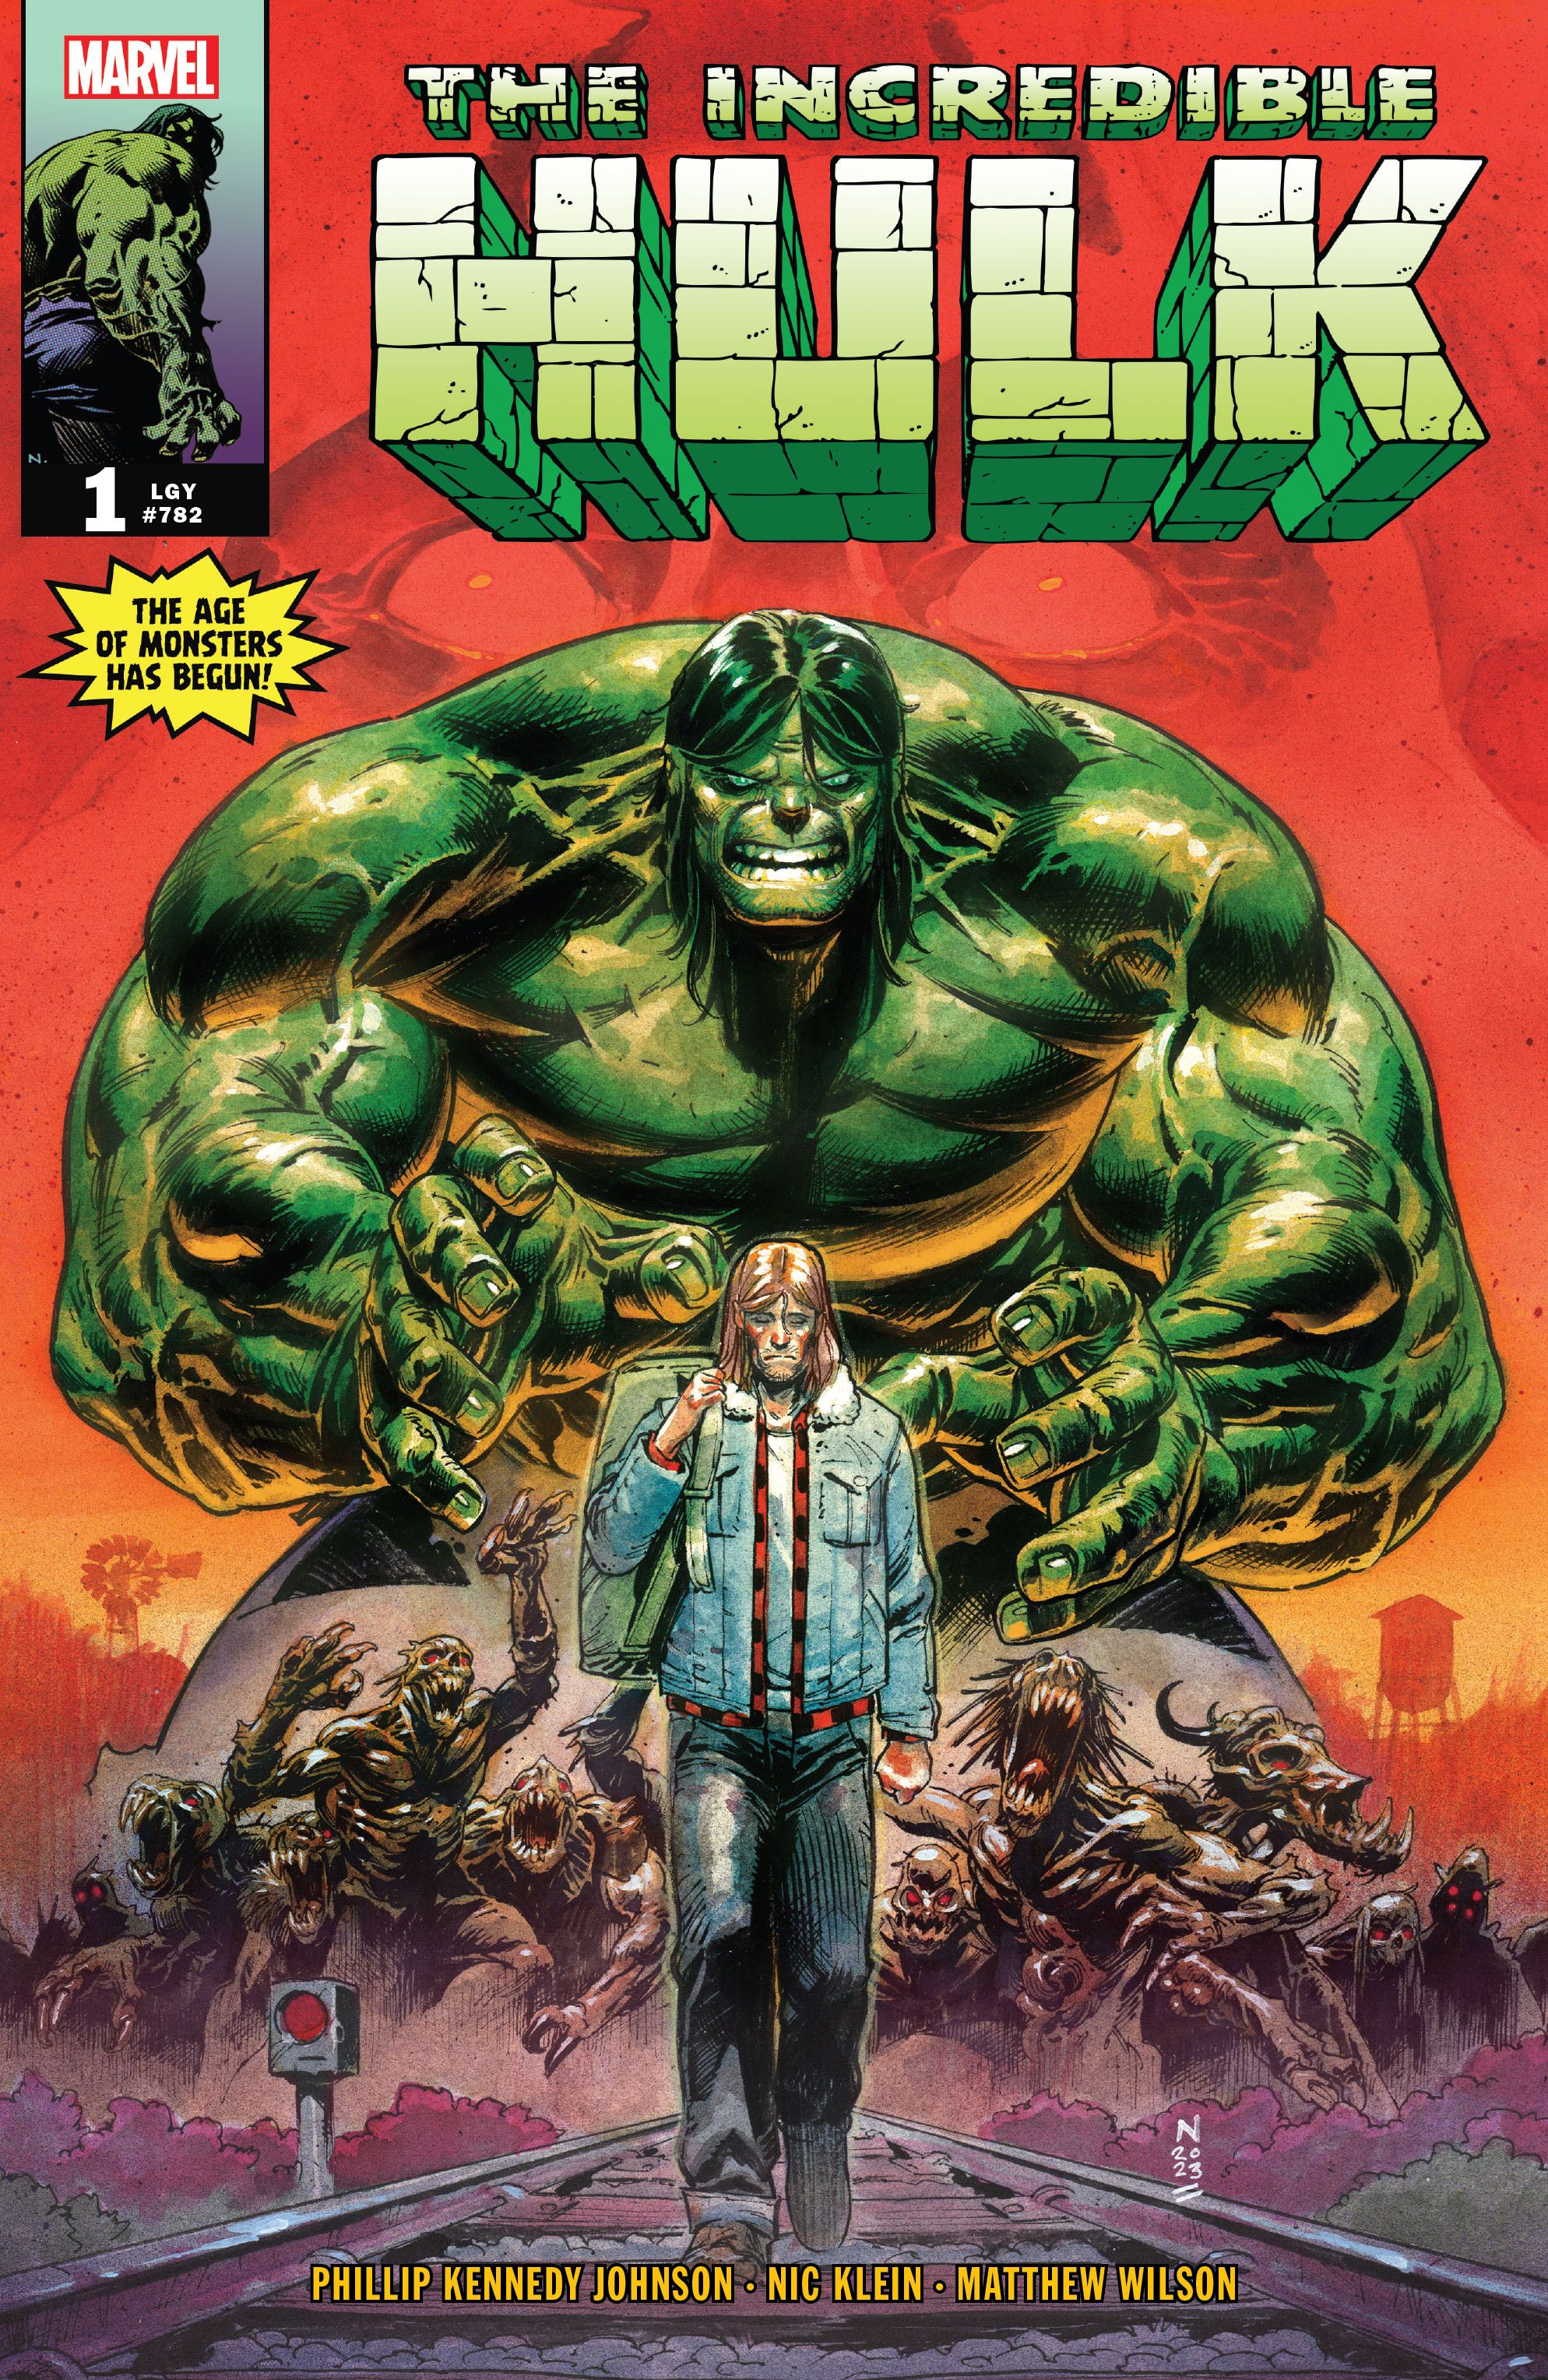 The Incredible Hulk Comic Review